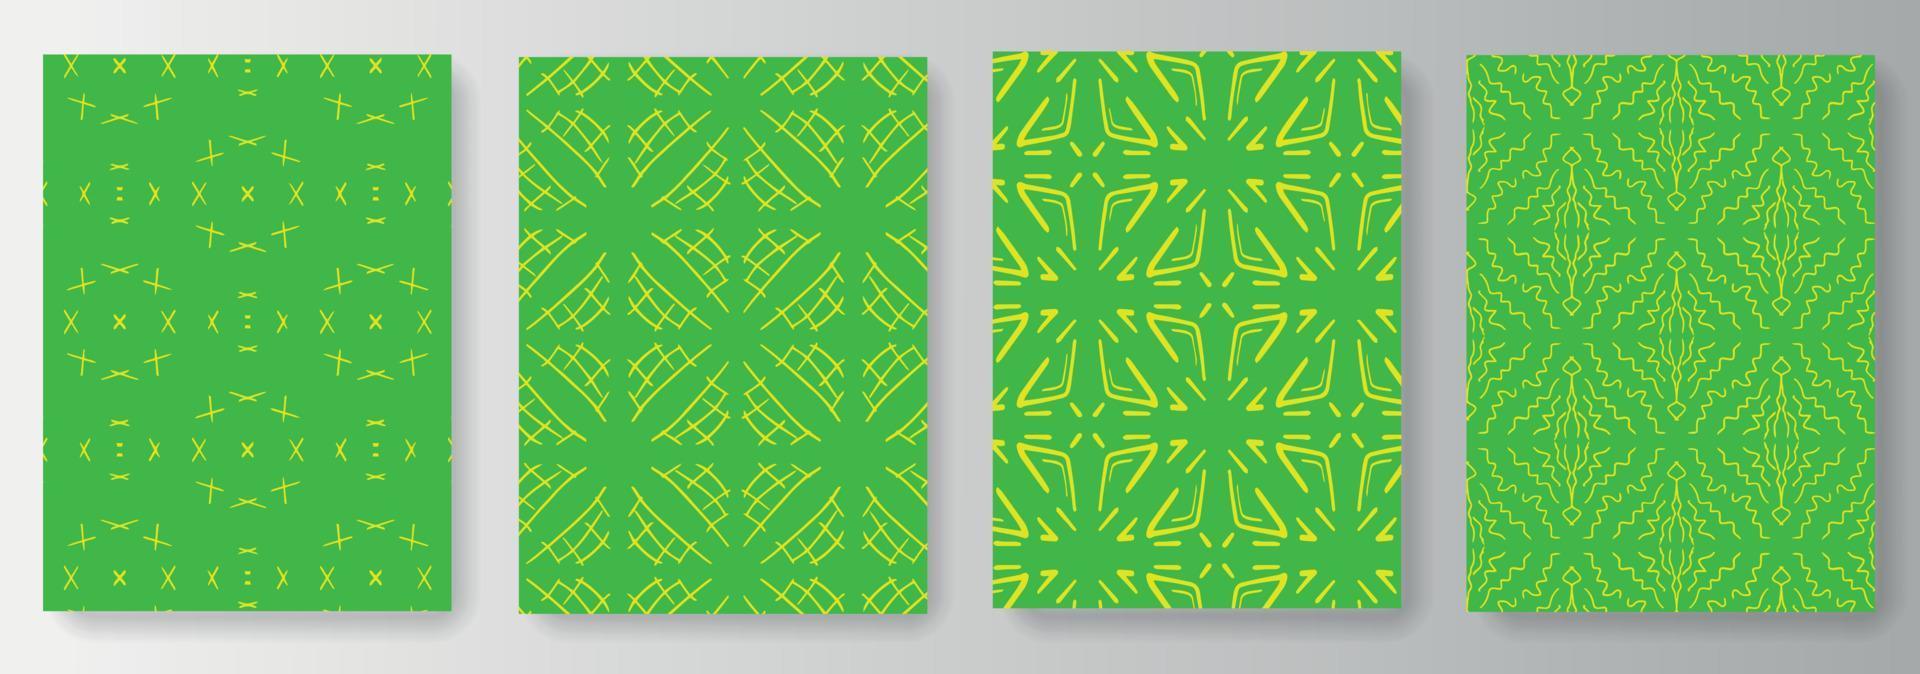 coleção de fundos verdes com padrão amarelo vetor